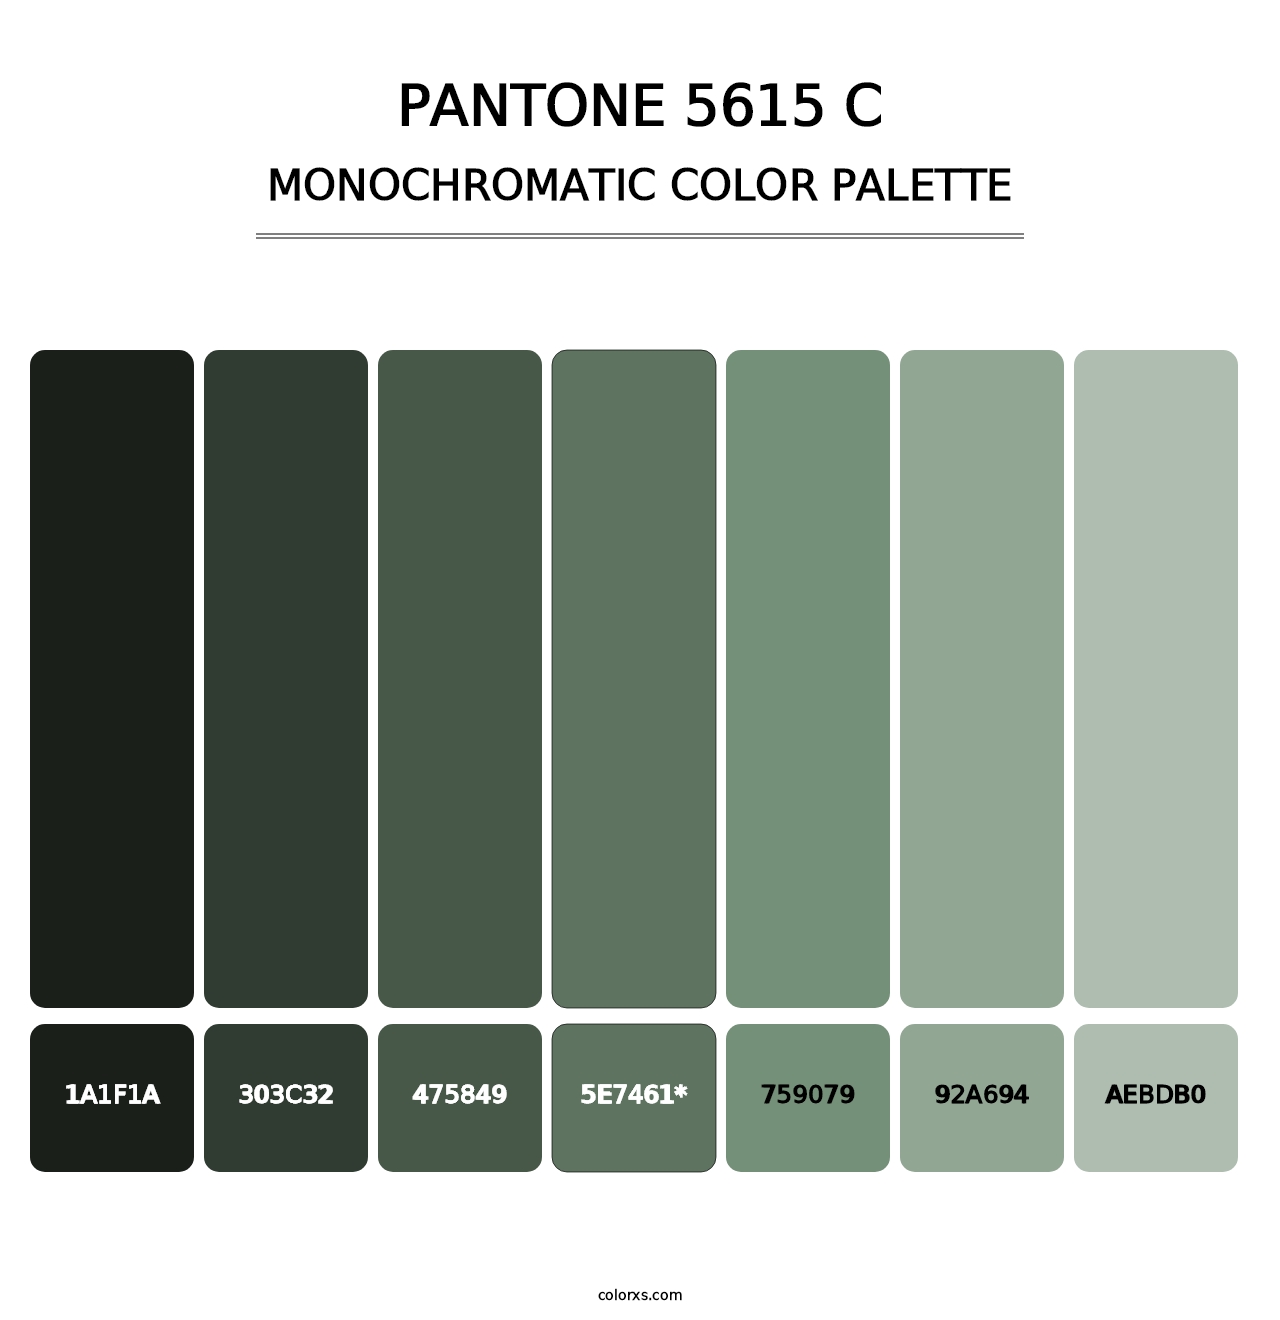 PANTONE 5615 C - Monochromatic Color Palette